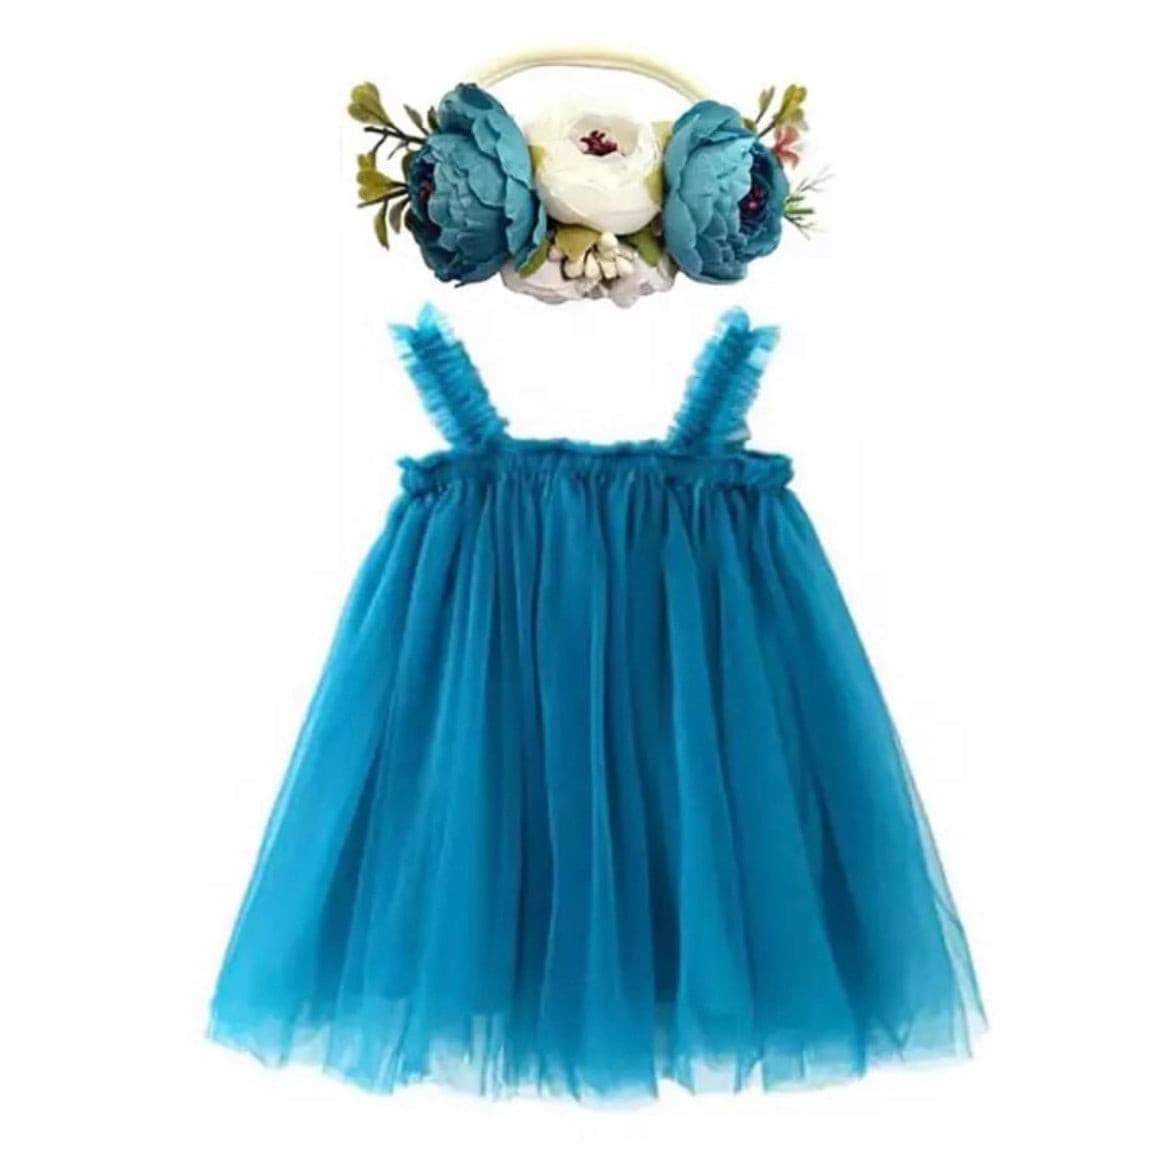 Skyler - Tulle Dress Toddler Tutu Flower girl dress.